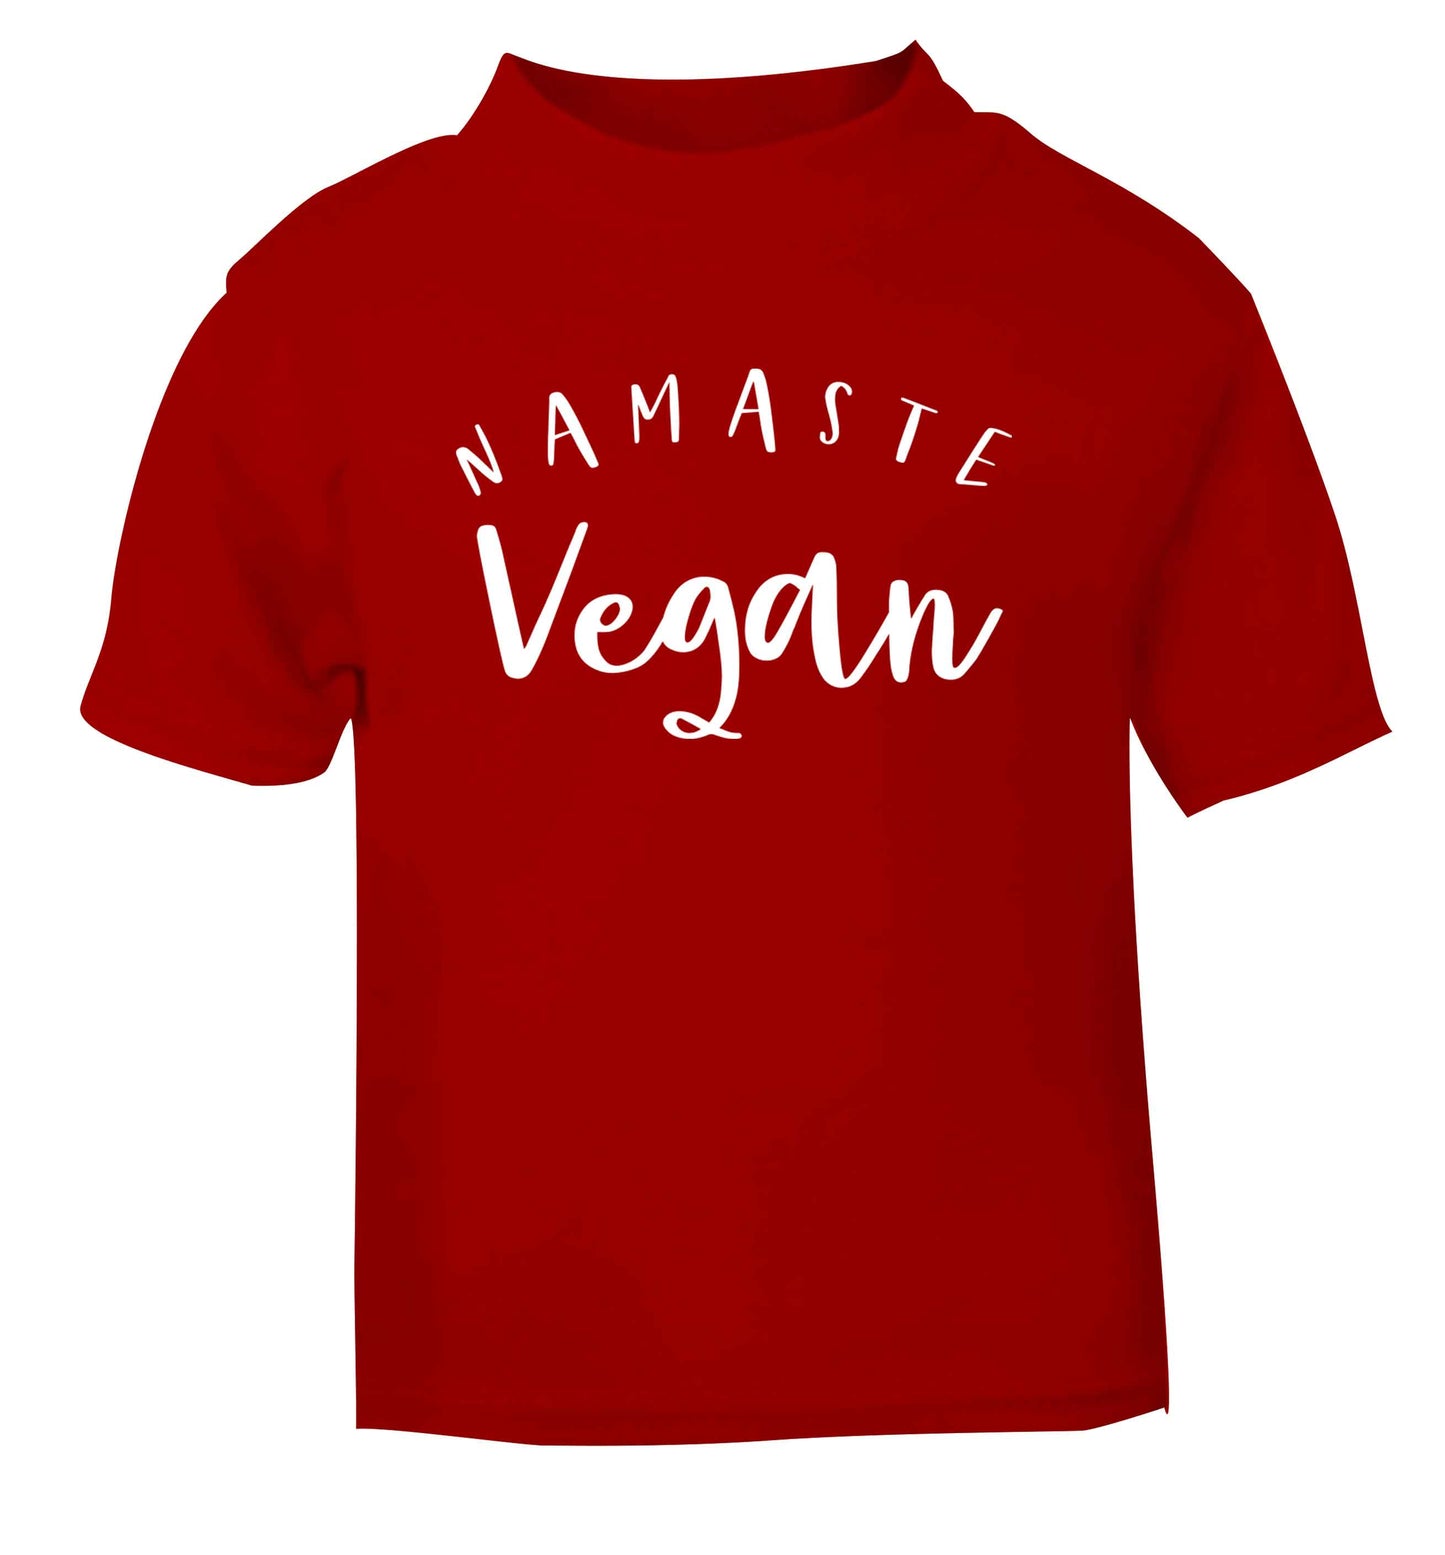 Namaste vegan red Baby Toddler Tshirt 2 Years